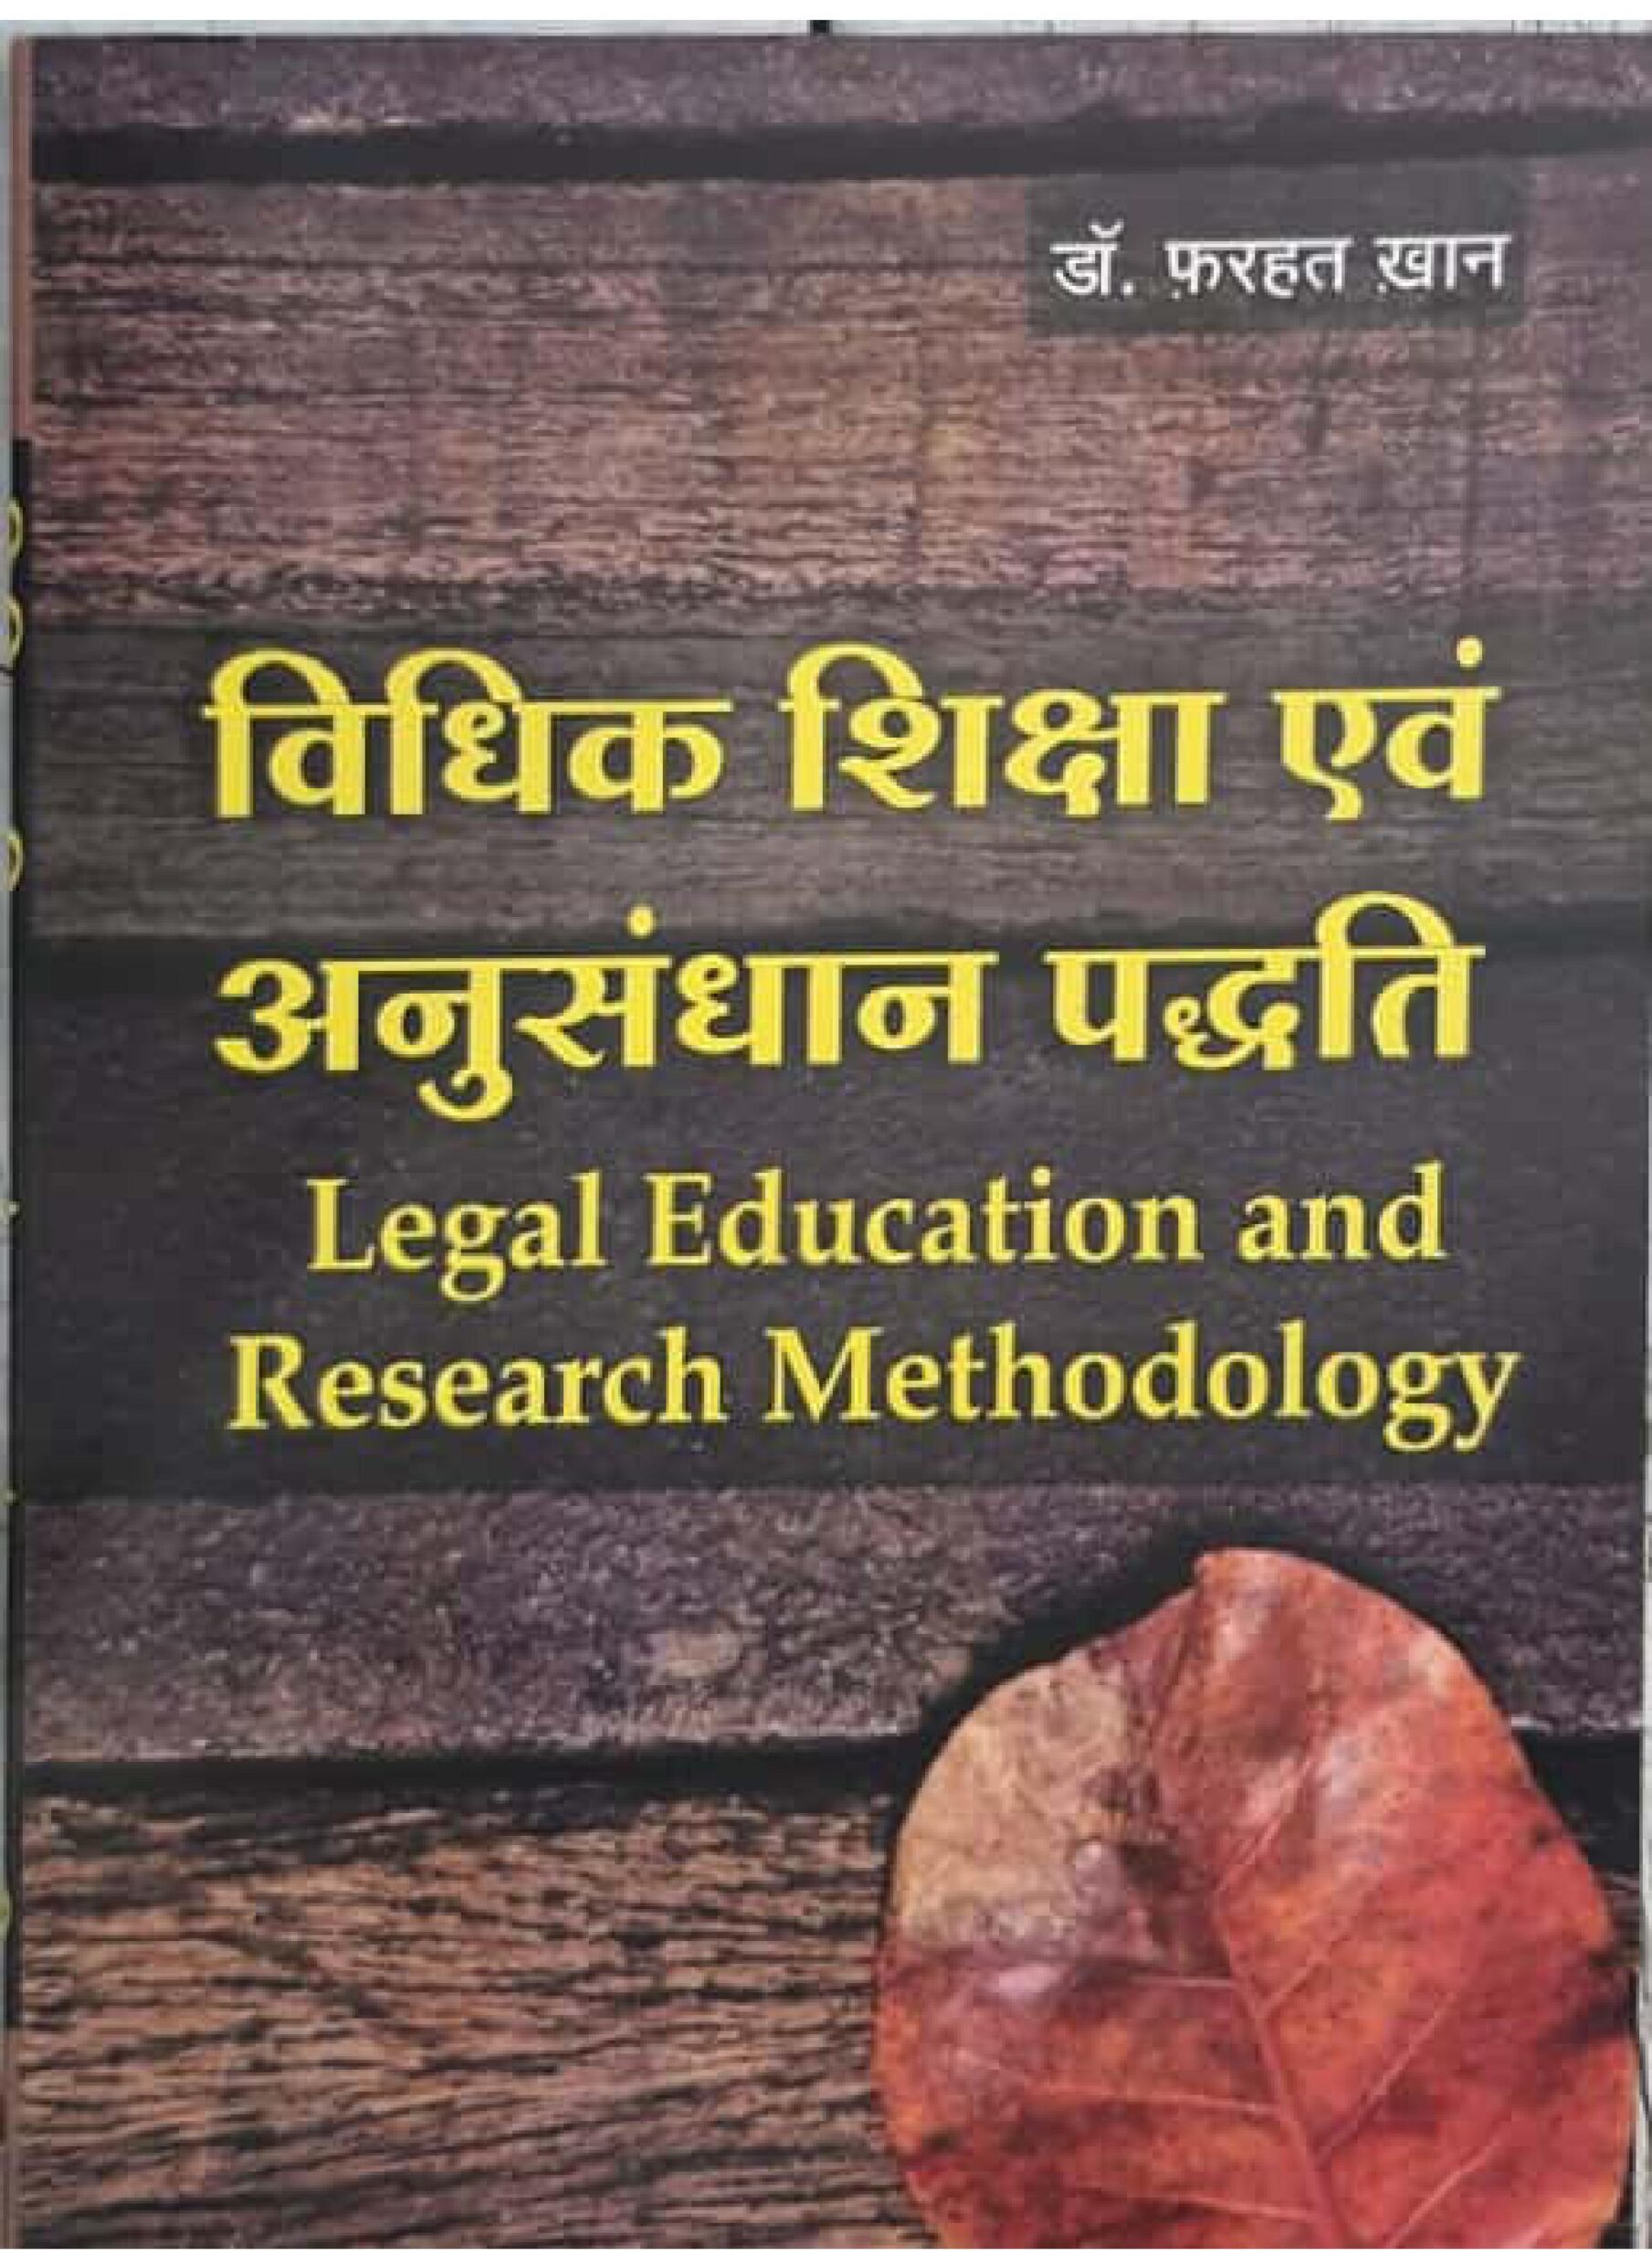 Legal Education and Research Methodology विधिक शिक्षा एवं अनुसंधान पद्धति